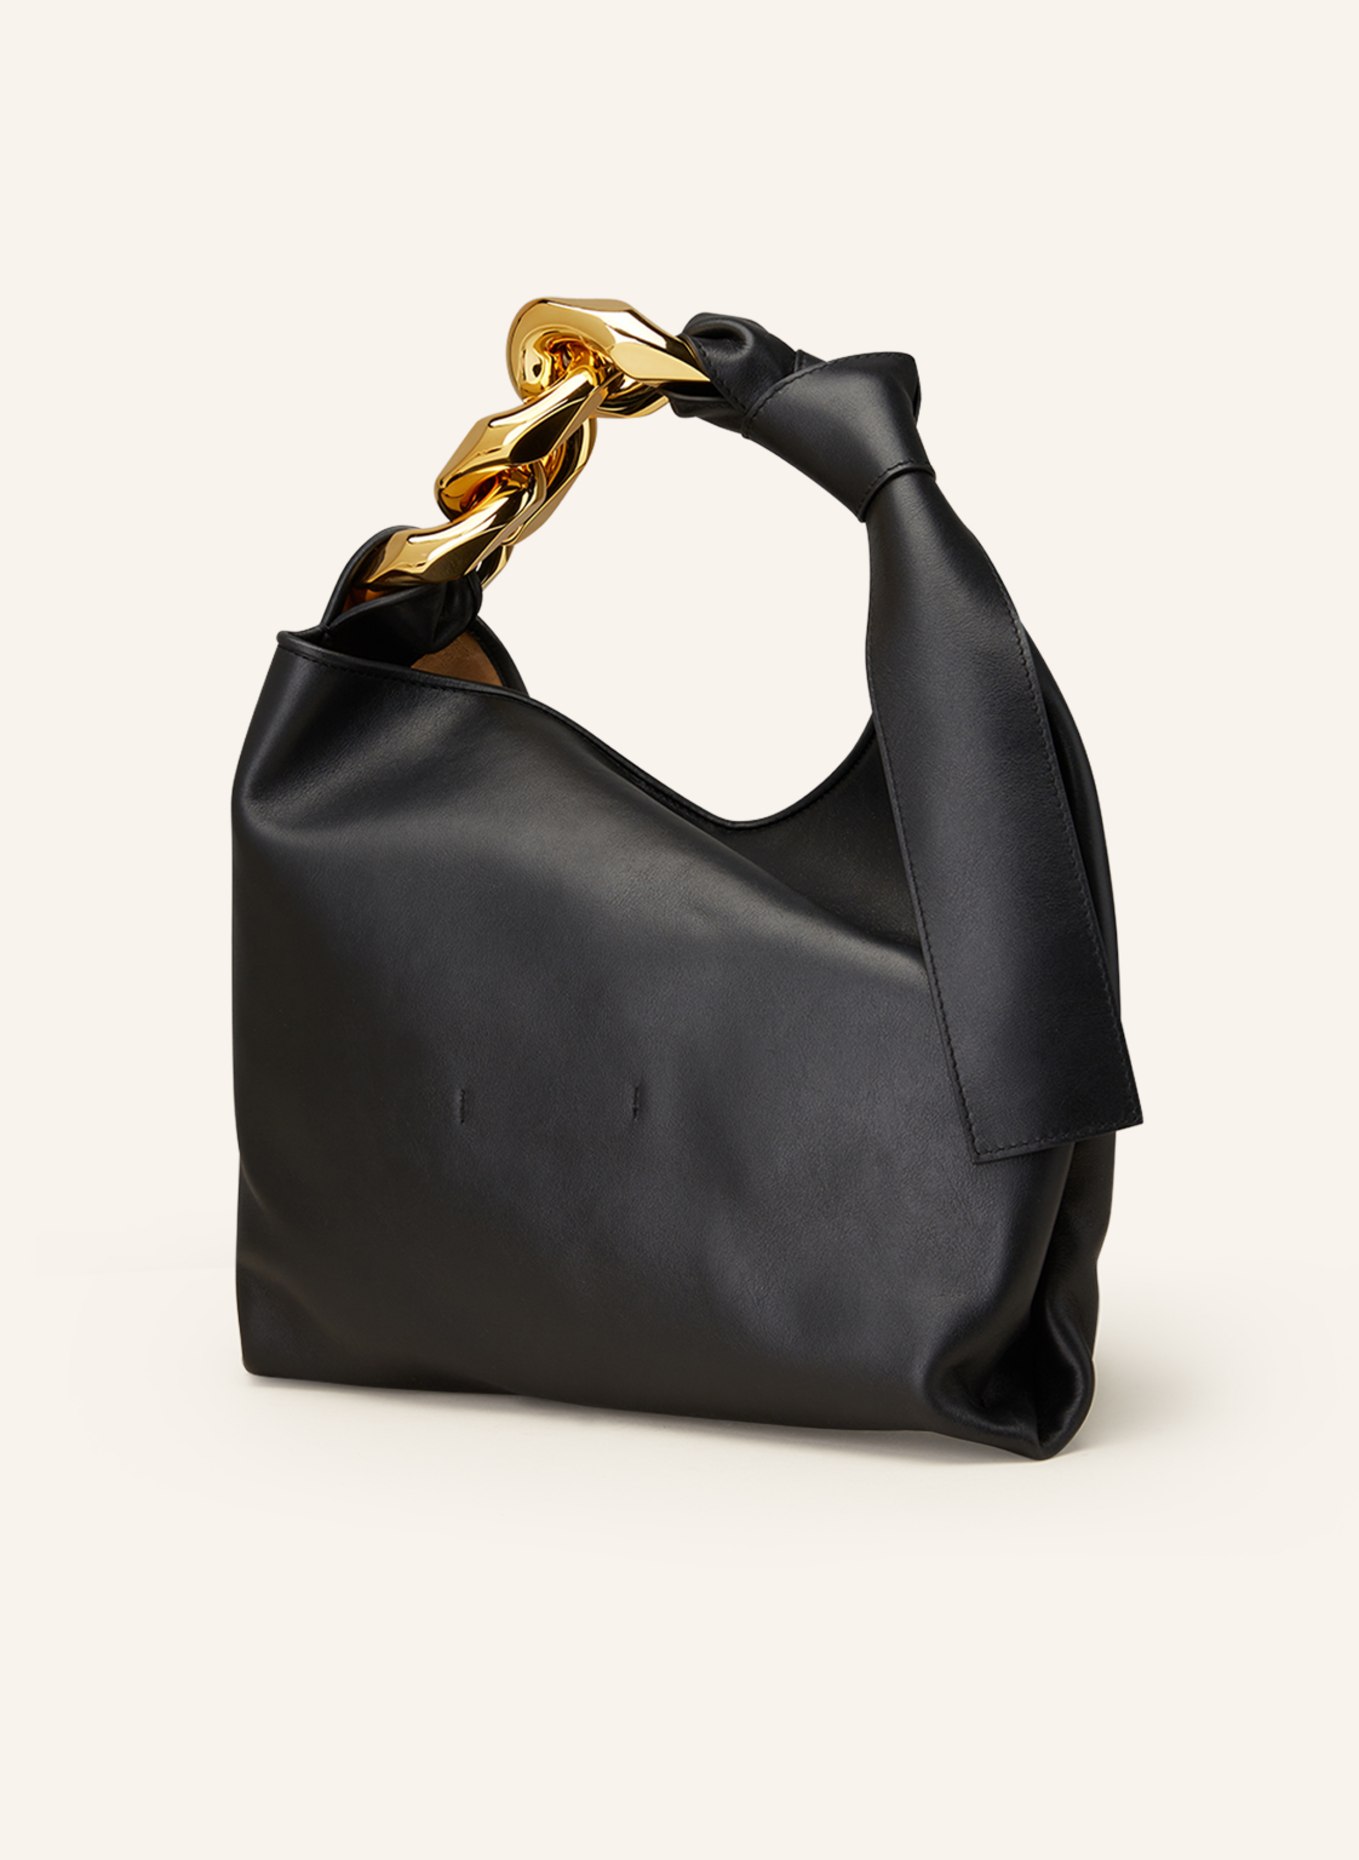 JW ANDERSON Hobo-Bag SMALL CHAIN, Farbe: SCHWARZ (Bild 2)